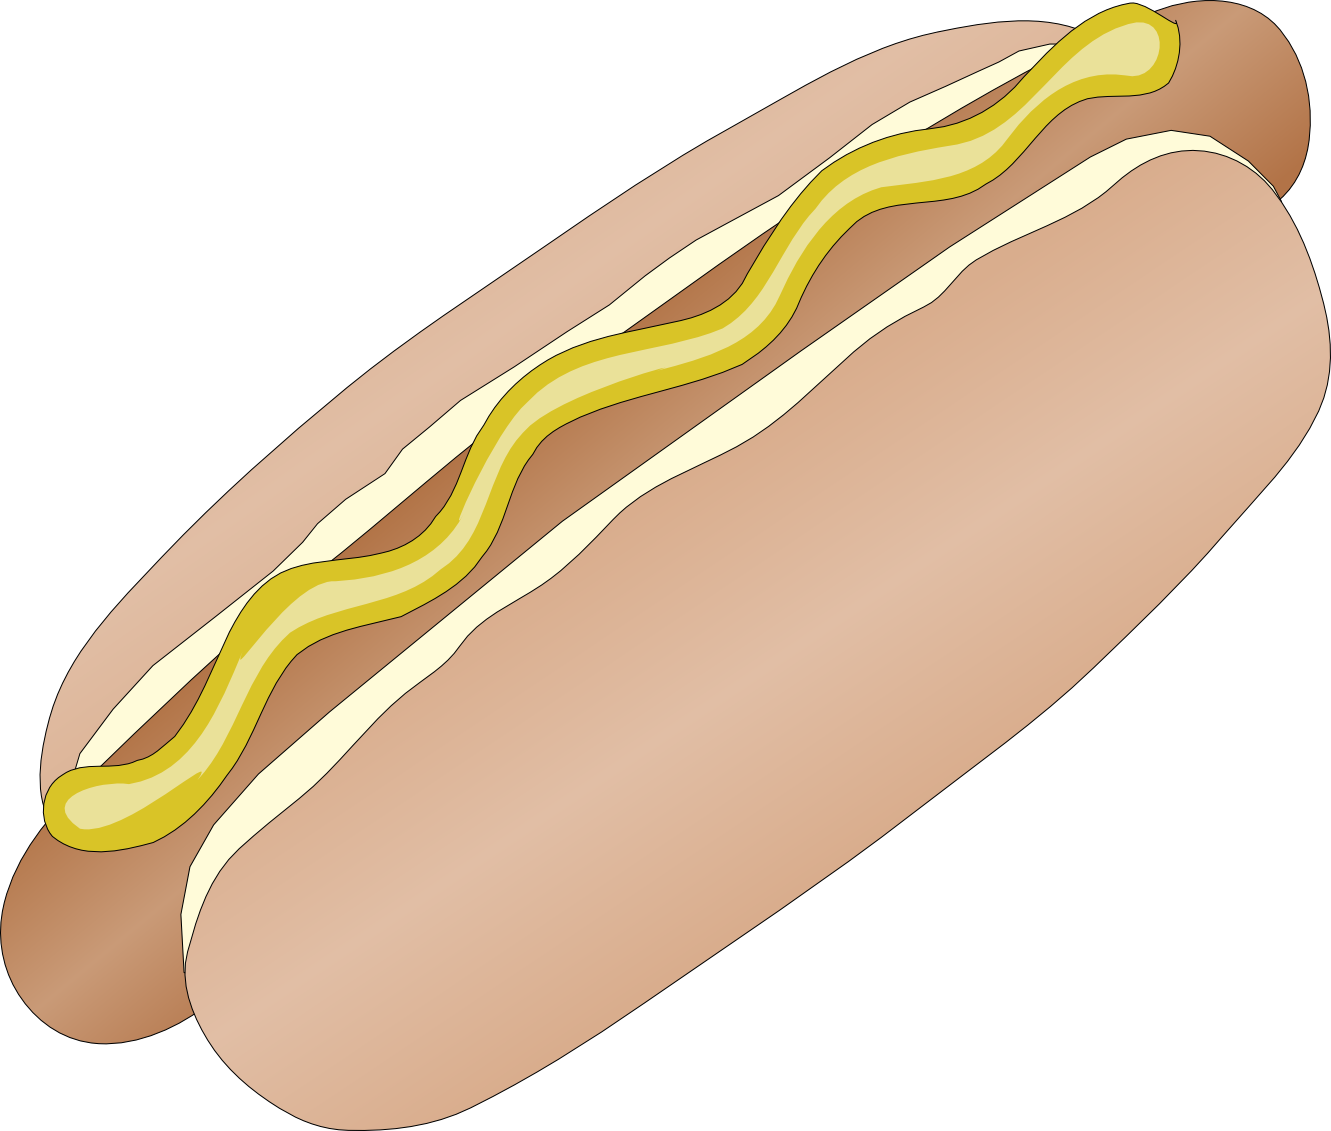 Hot Dog Art 